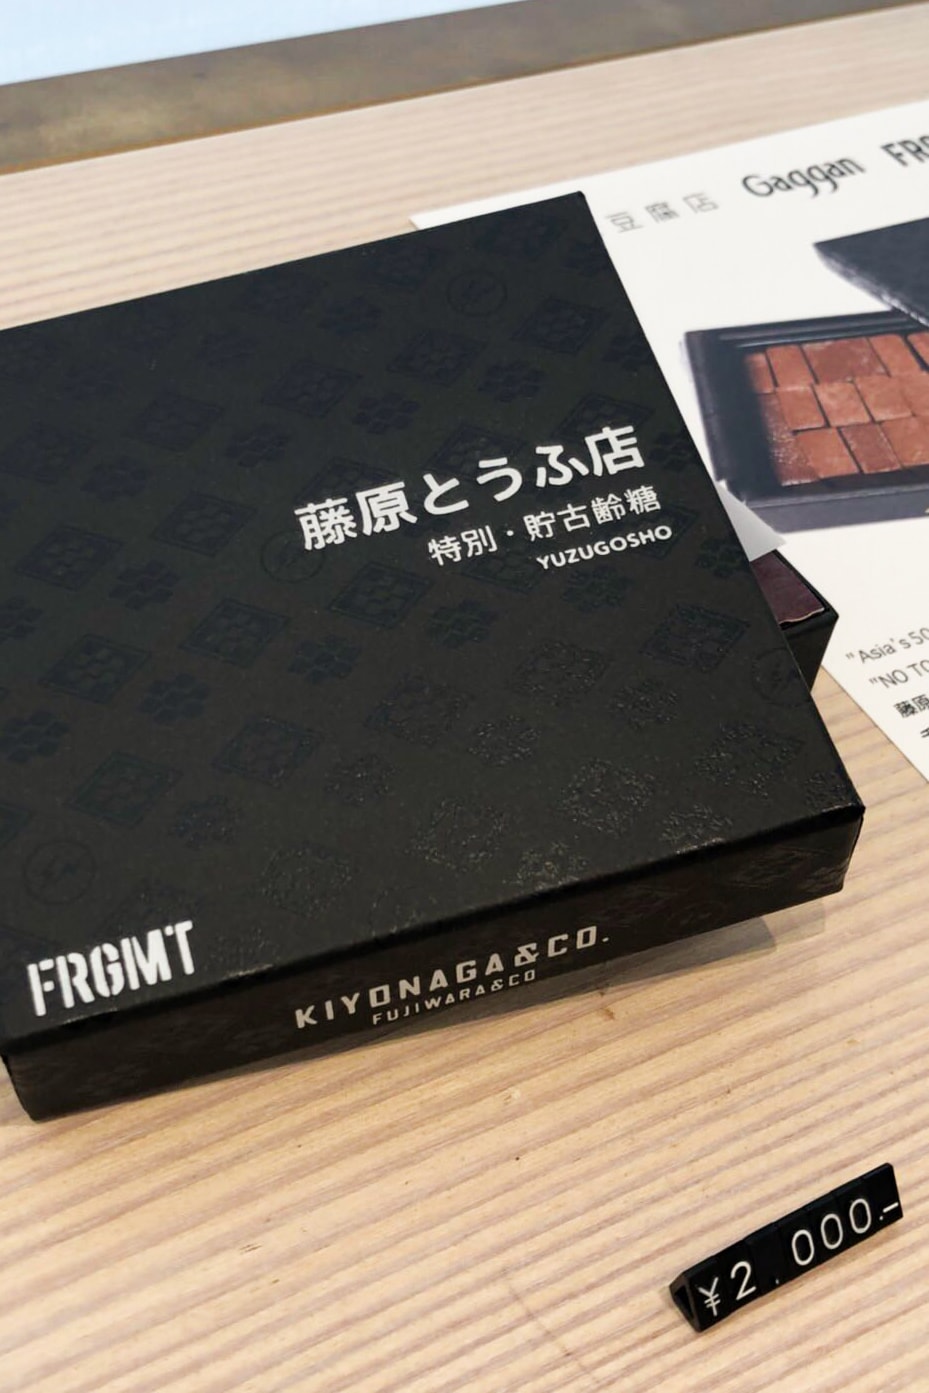 Hiroshi Fujiwara FUJIWARA&CO. Pop-Up Kiyonaga Sakanaction Sophnet. Hirofumi Kiyonaga fragment design